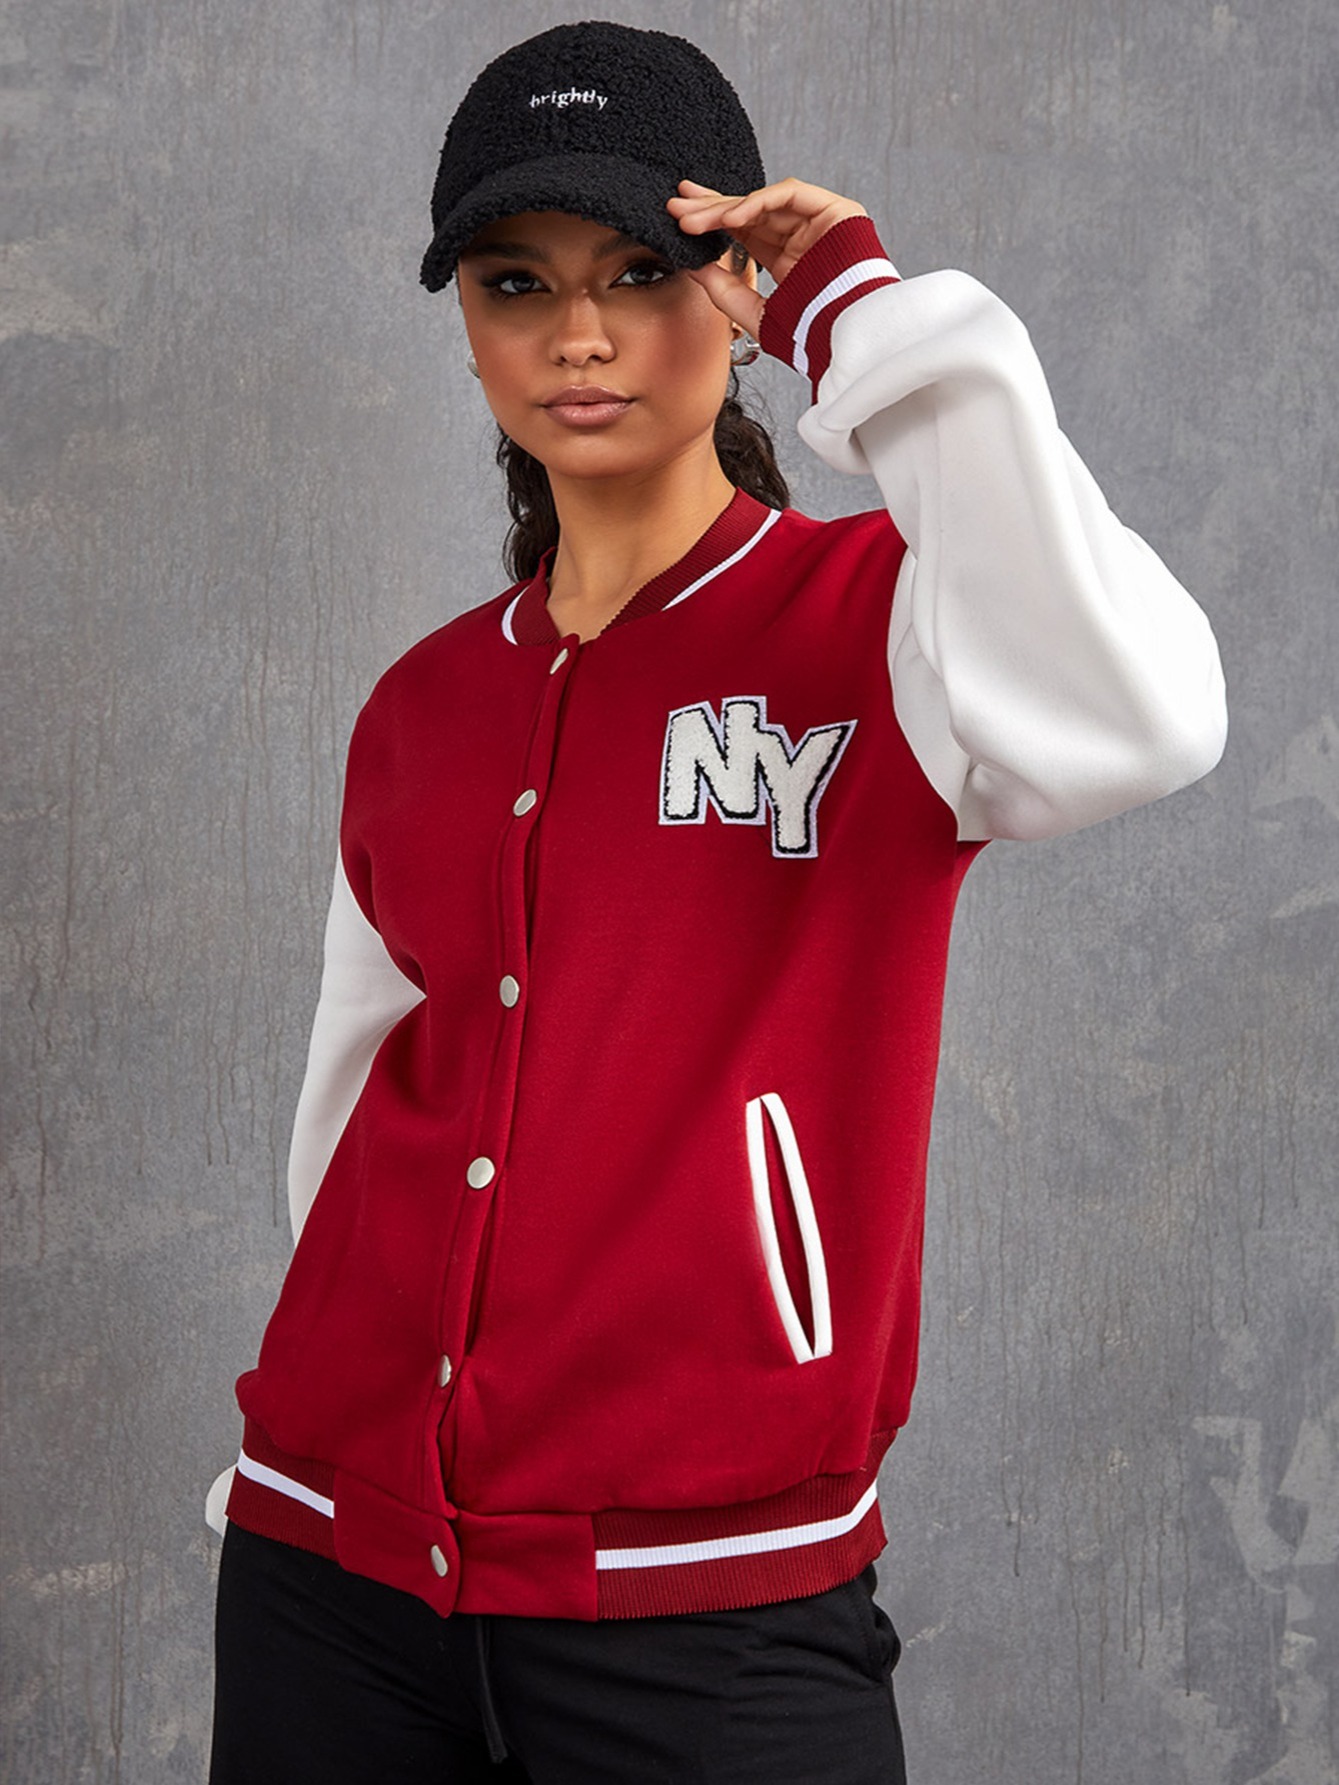 Unisex NY Varsity Jacket for Men and Women (M, NY Varsity Jacket)